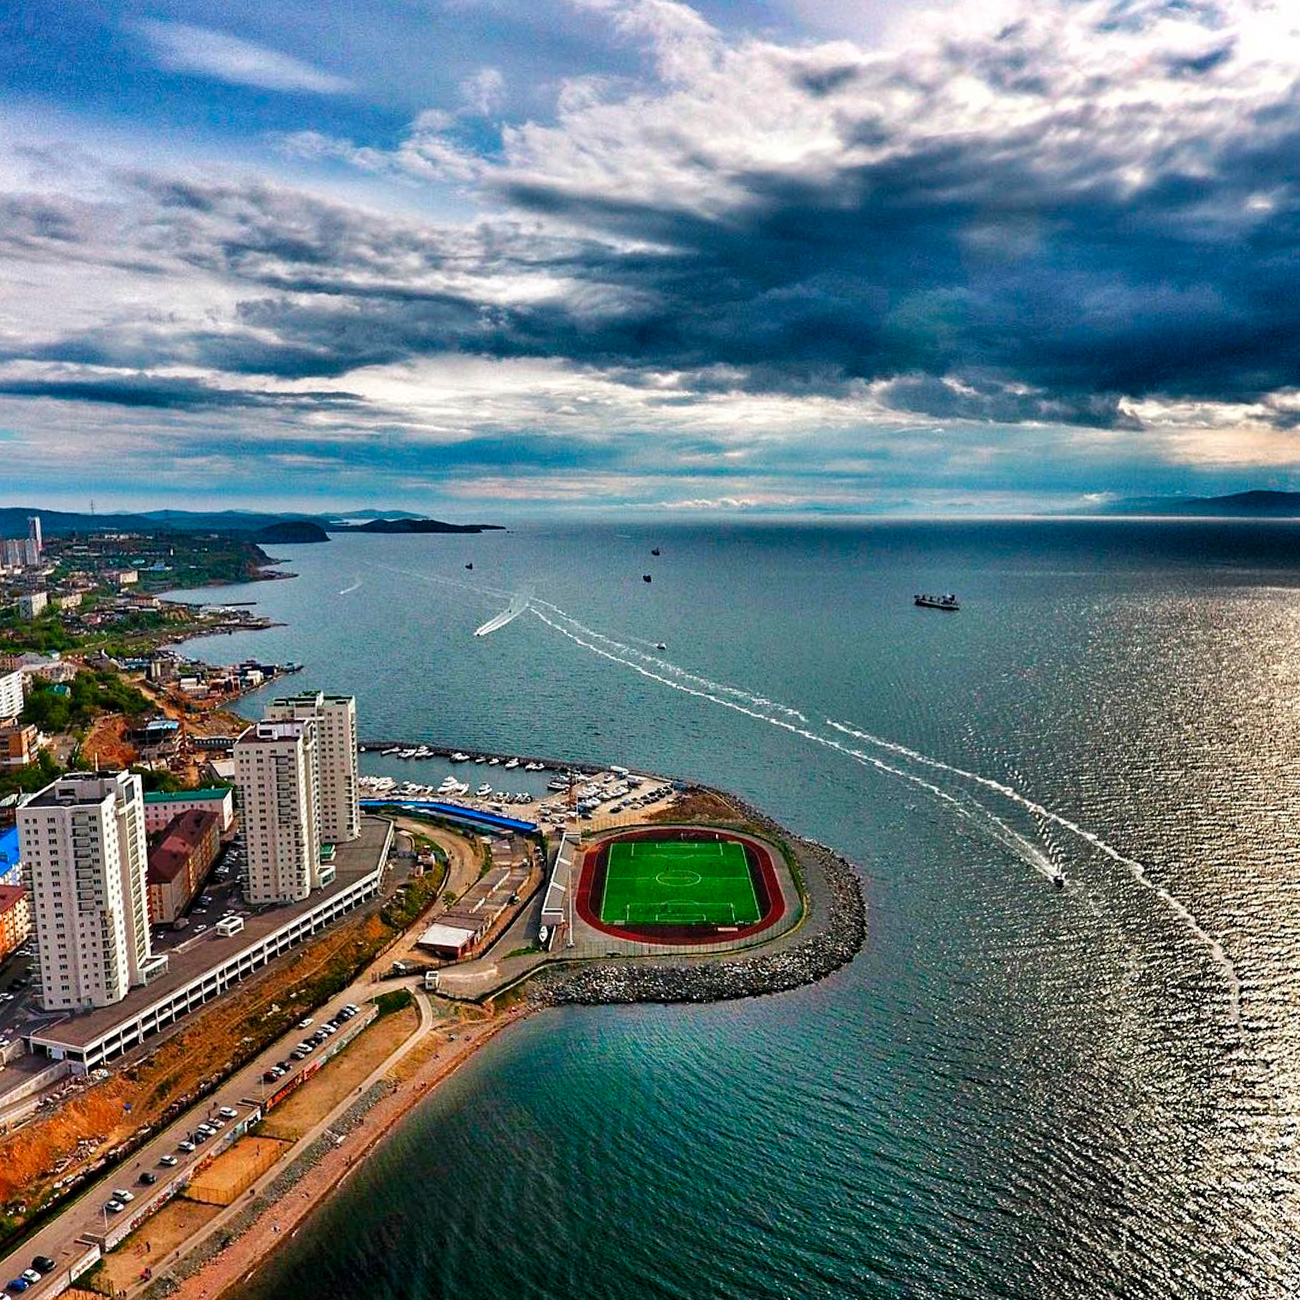 Gledajući iz ptičje perspektive, ivica Kuperovog rta gdje je stadion sagrađen podsjeća na zelenu točku koja razdvaja vodu Amurskog zaljeva od stambenih četvrti Vladivostoka. Novi stadion okružen je s tri strane vodom.